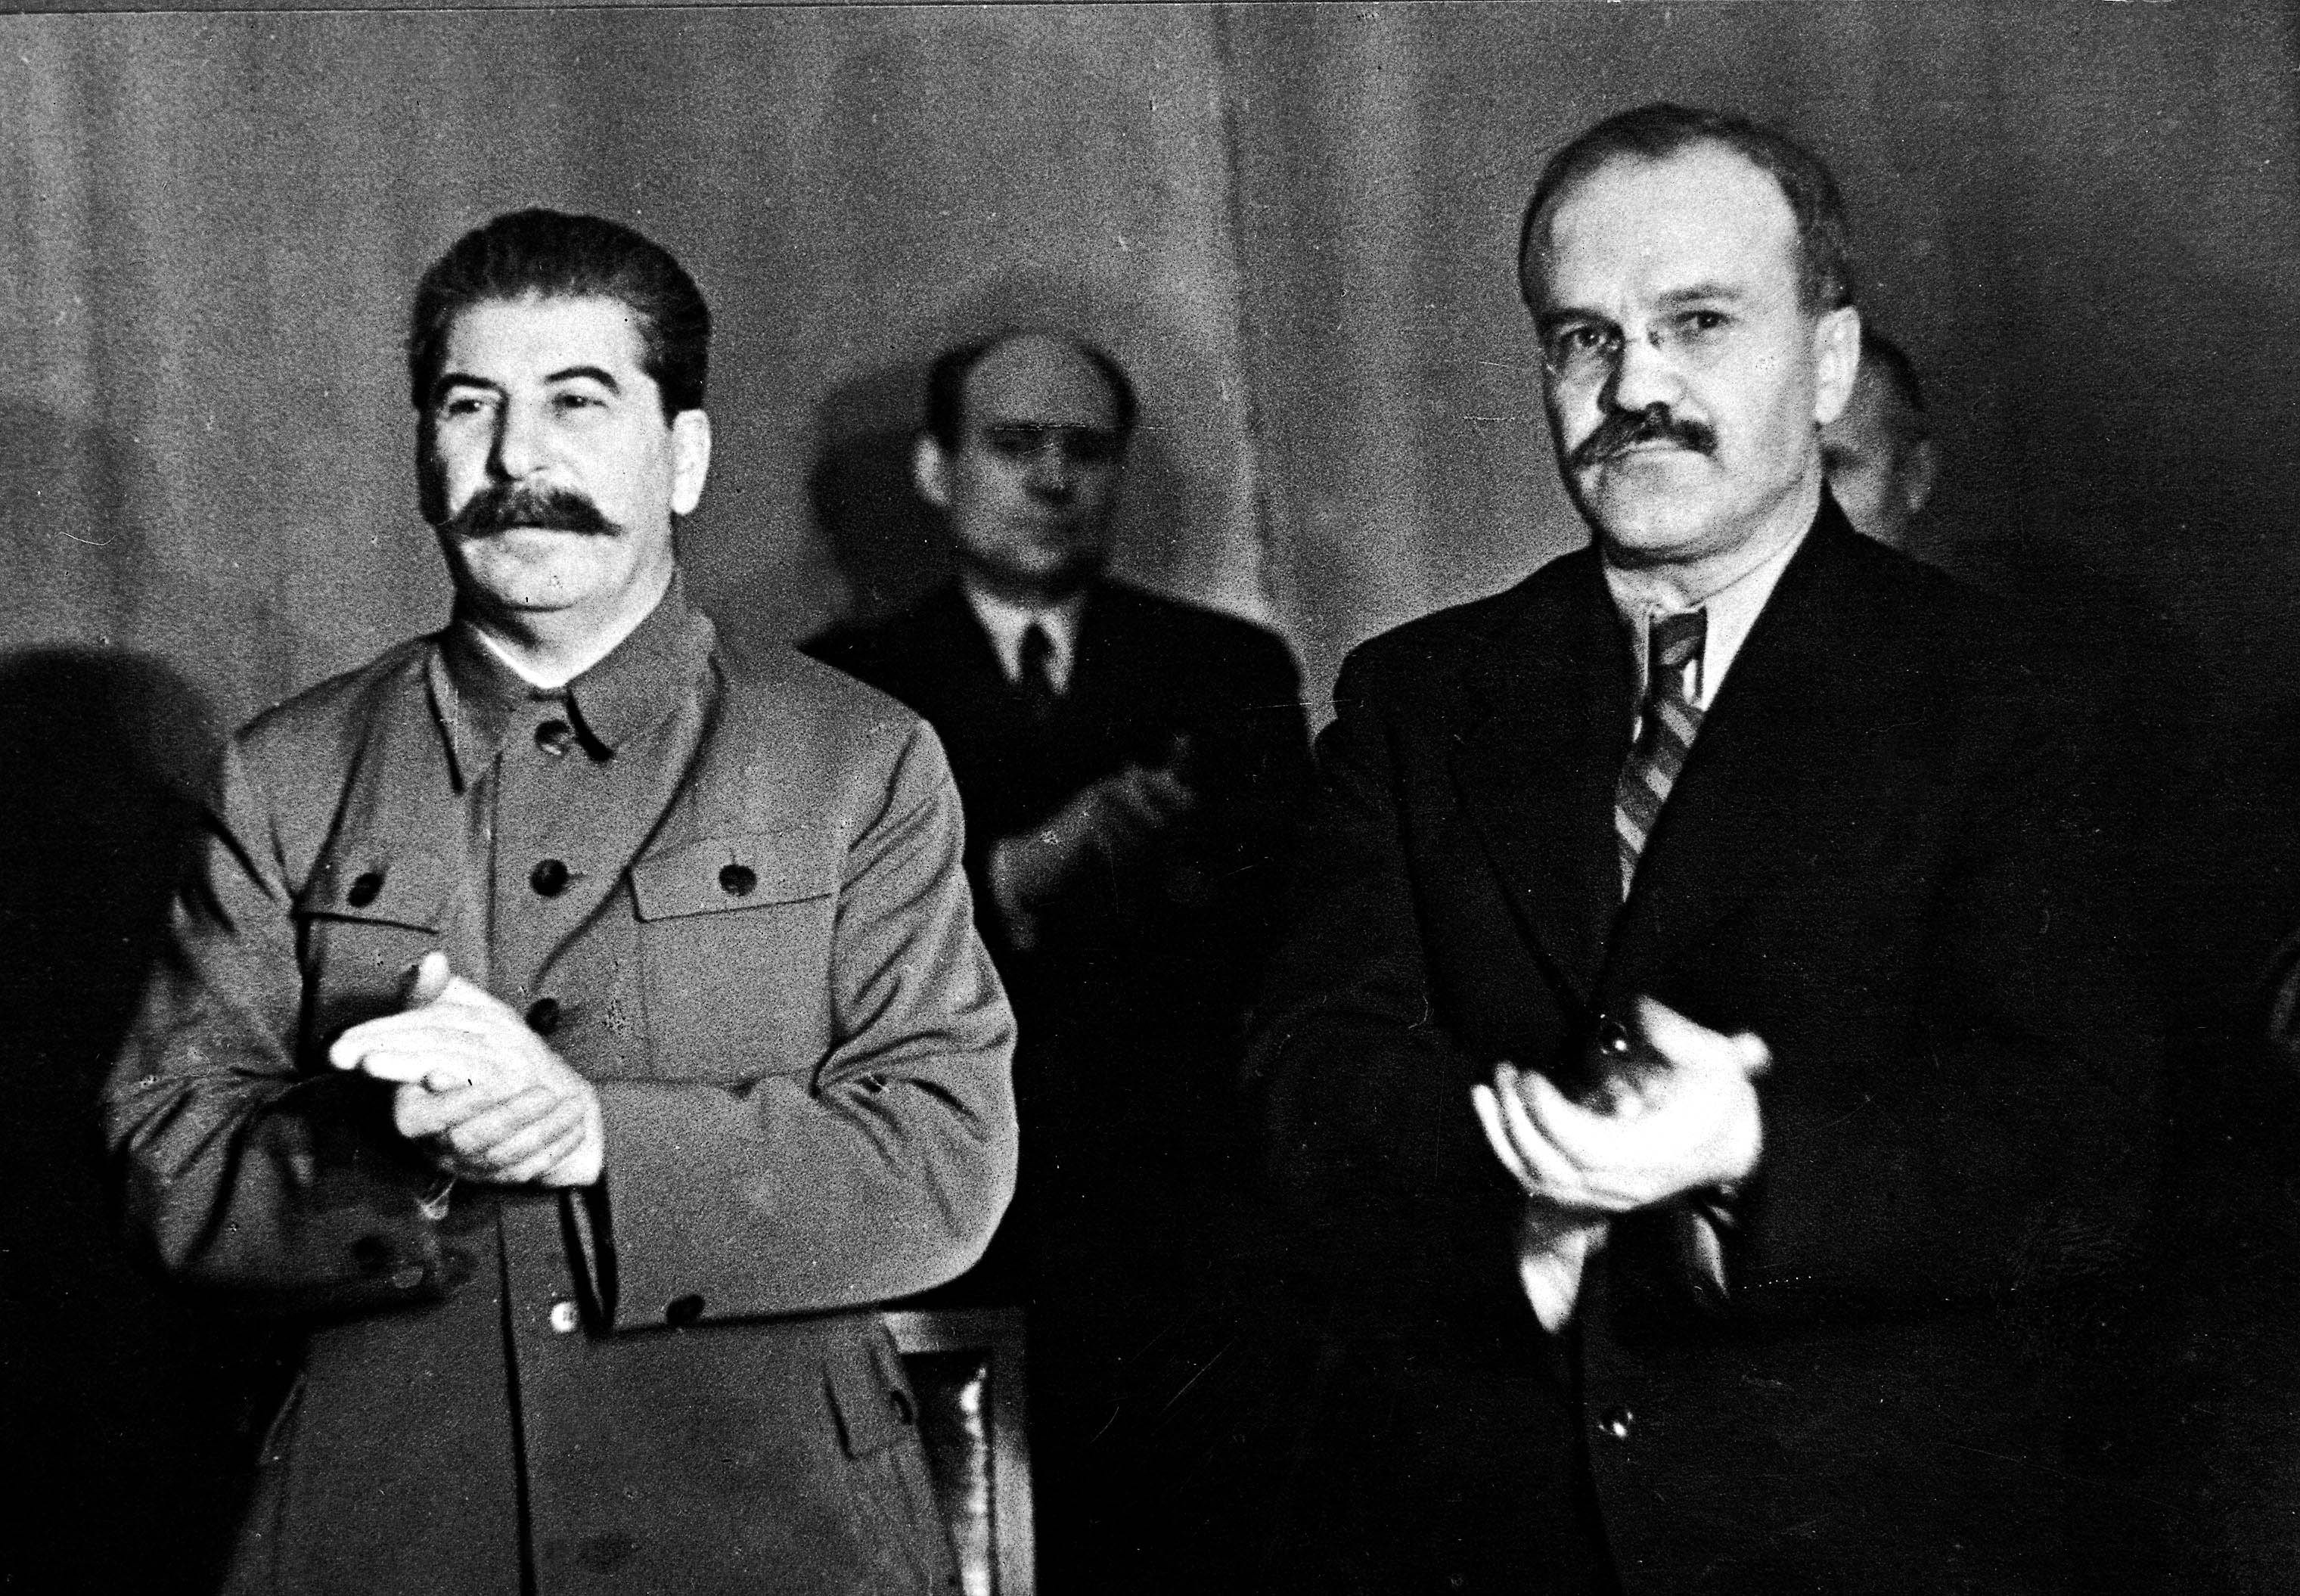 Председатель первого советского правительства